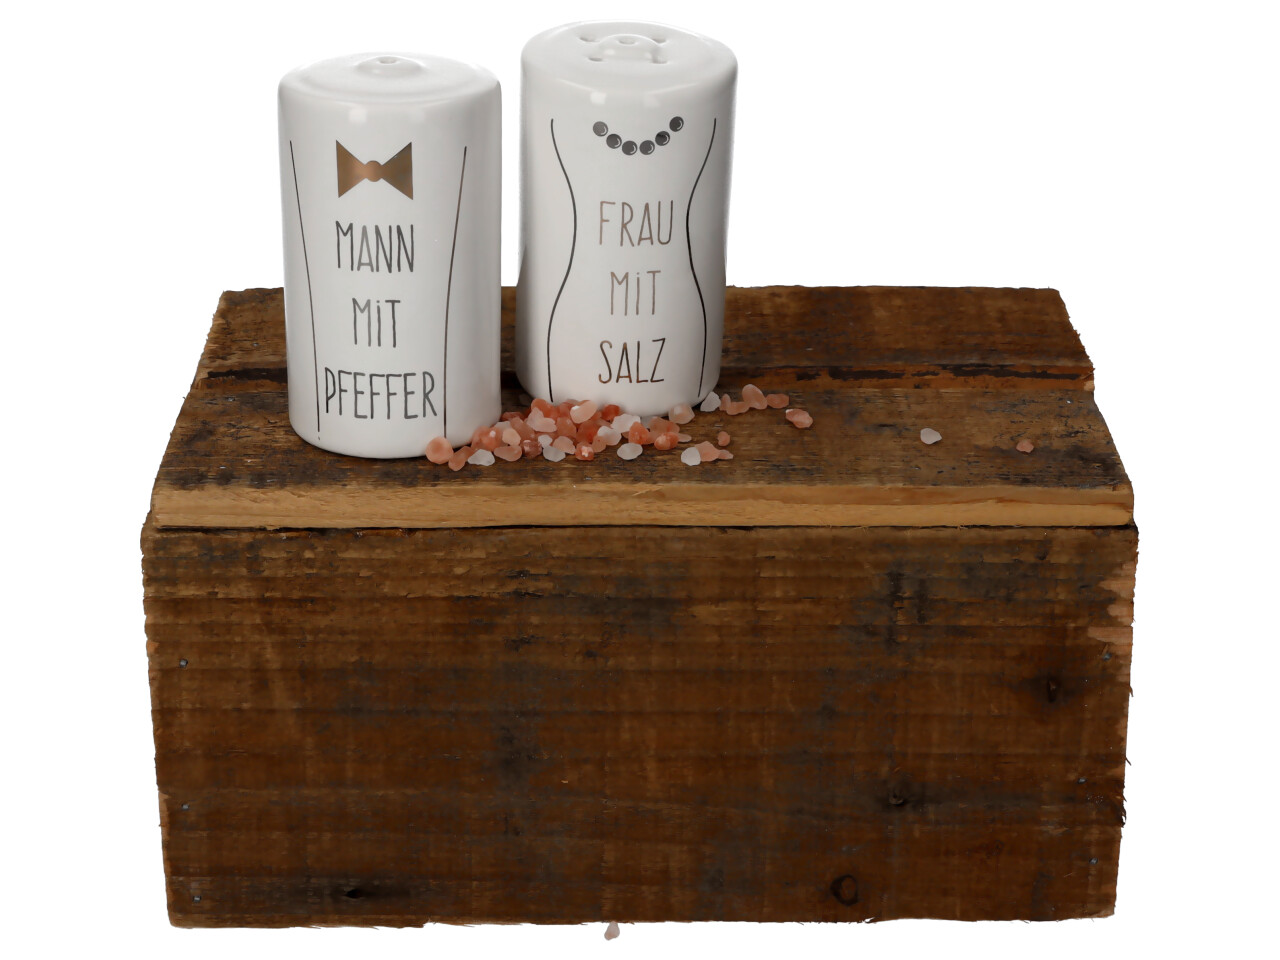 Salzstreuer aus Keramik in weiß Aufschrift Mann mit Pfeffer und Frau mit Salz stehend auf Holzkiste